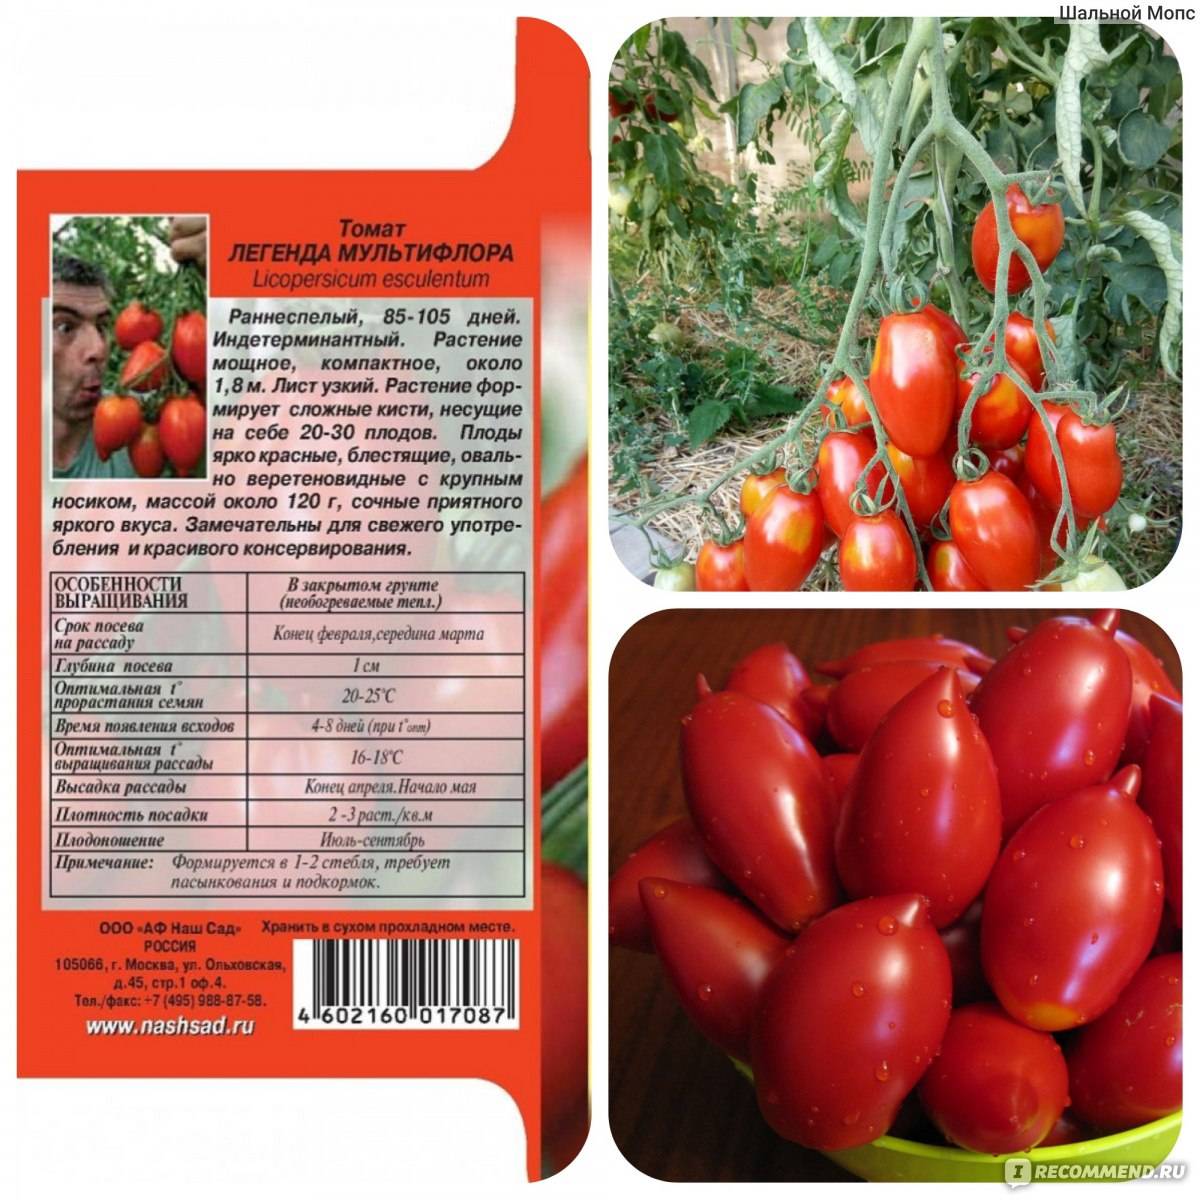 Описание сердцевидного томата чудо уолфорда и особенности выращивания